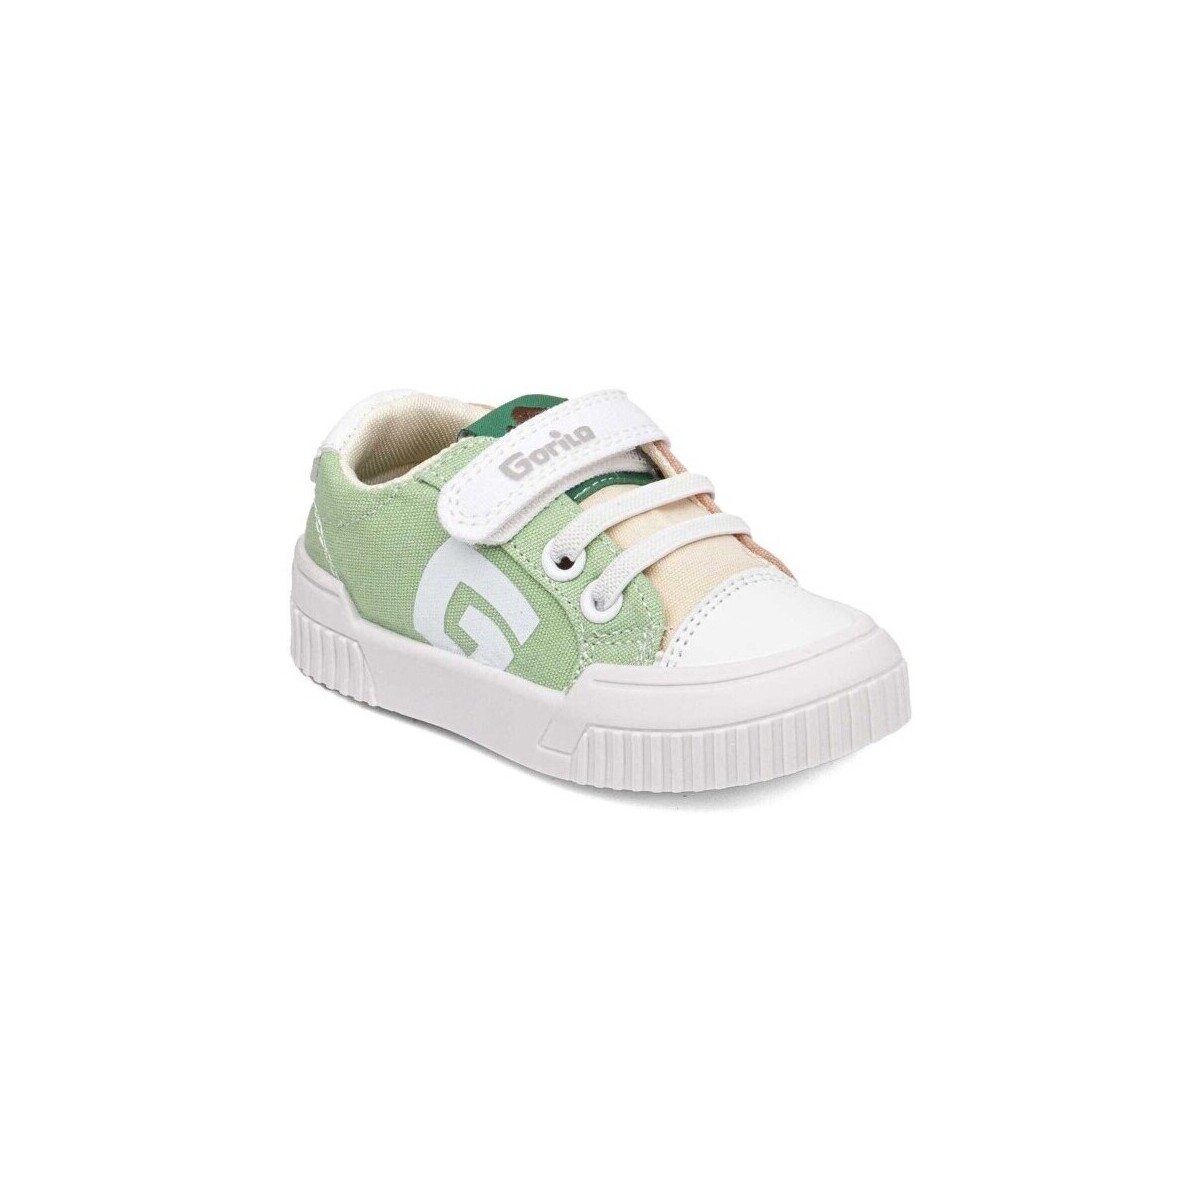 Sko Sneakers Gorila 28372-18 Flerfarvet